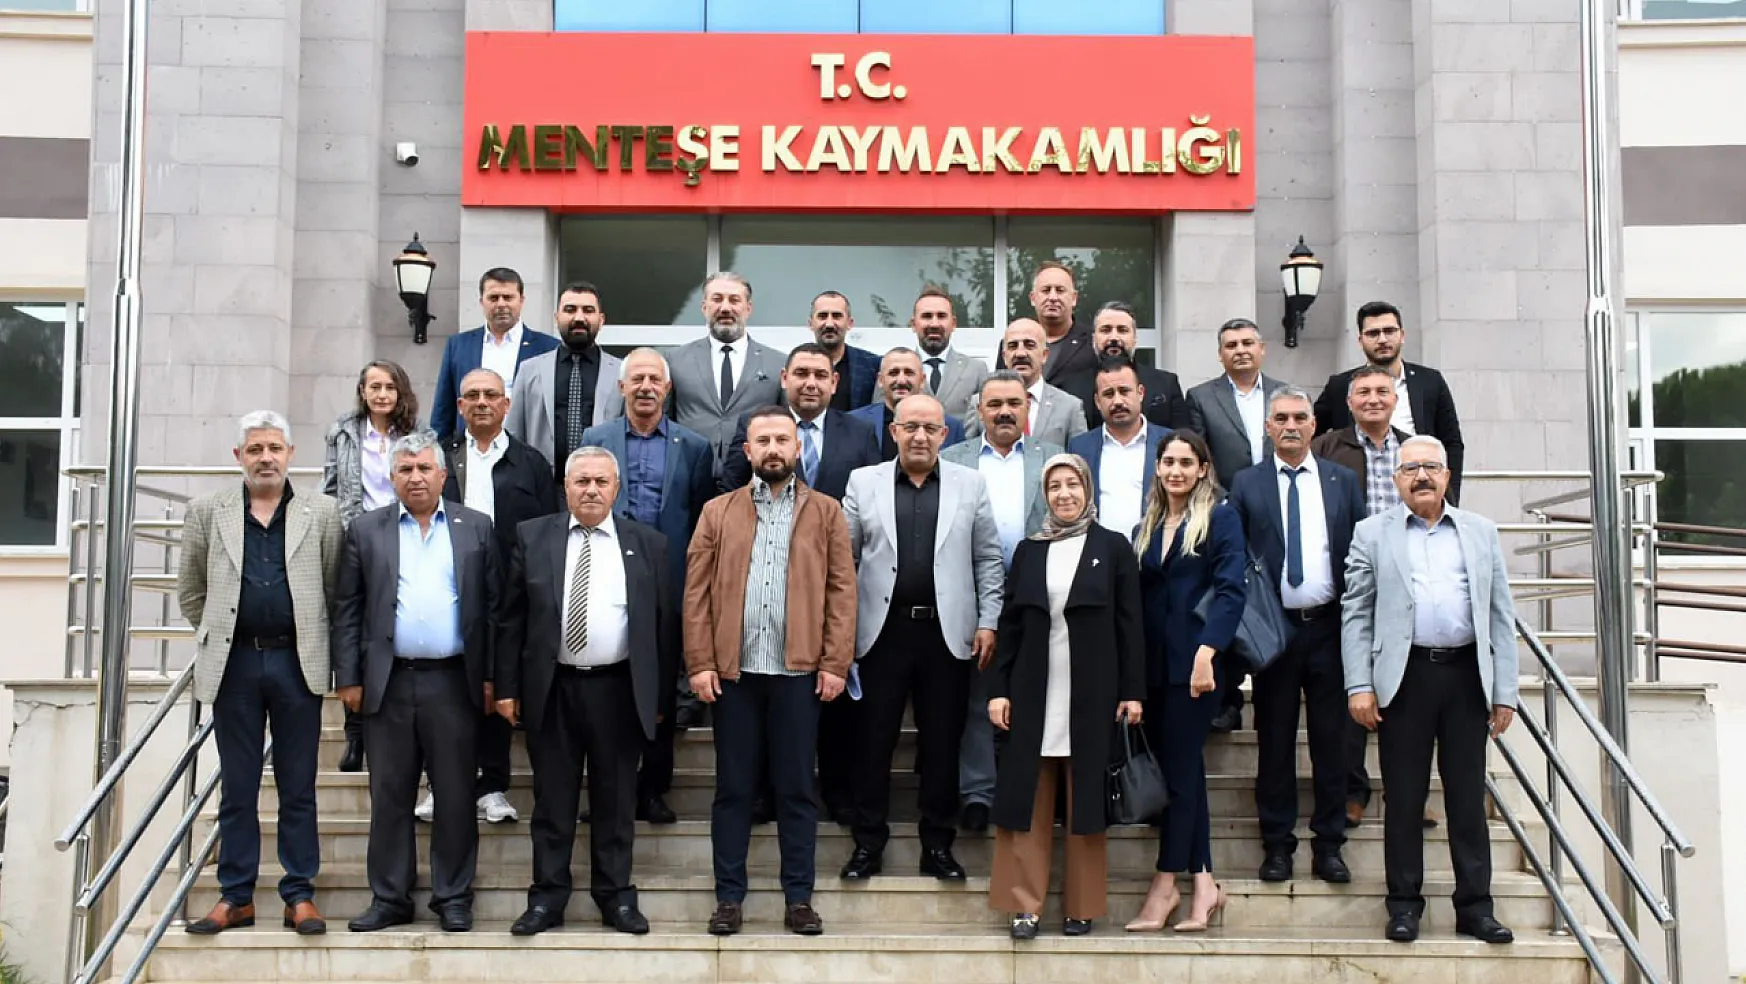 MHP Muğla İl Başkanı Akarfırat mazbatasını aldı